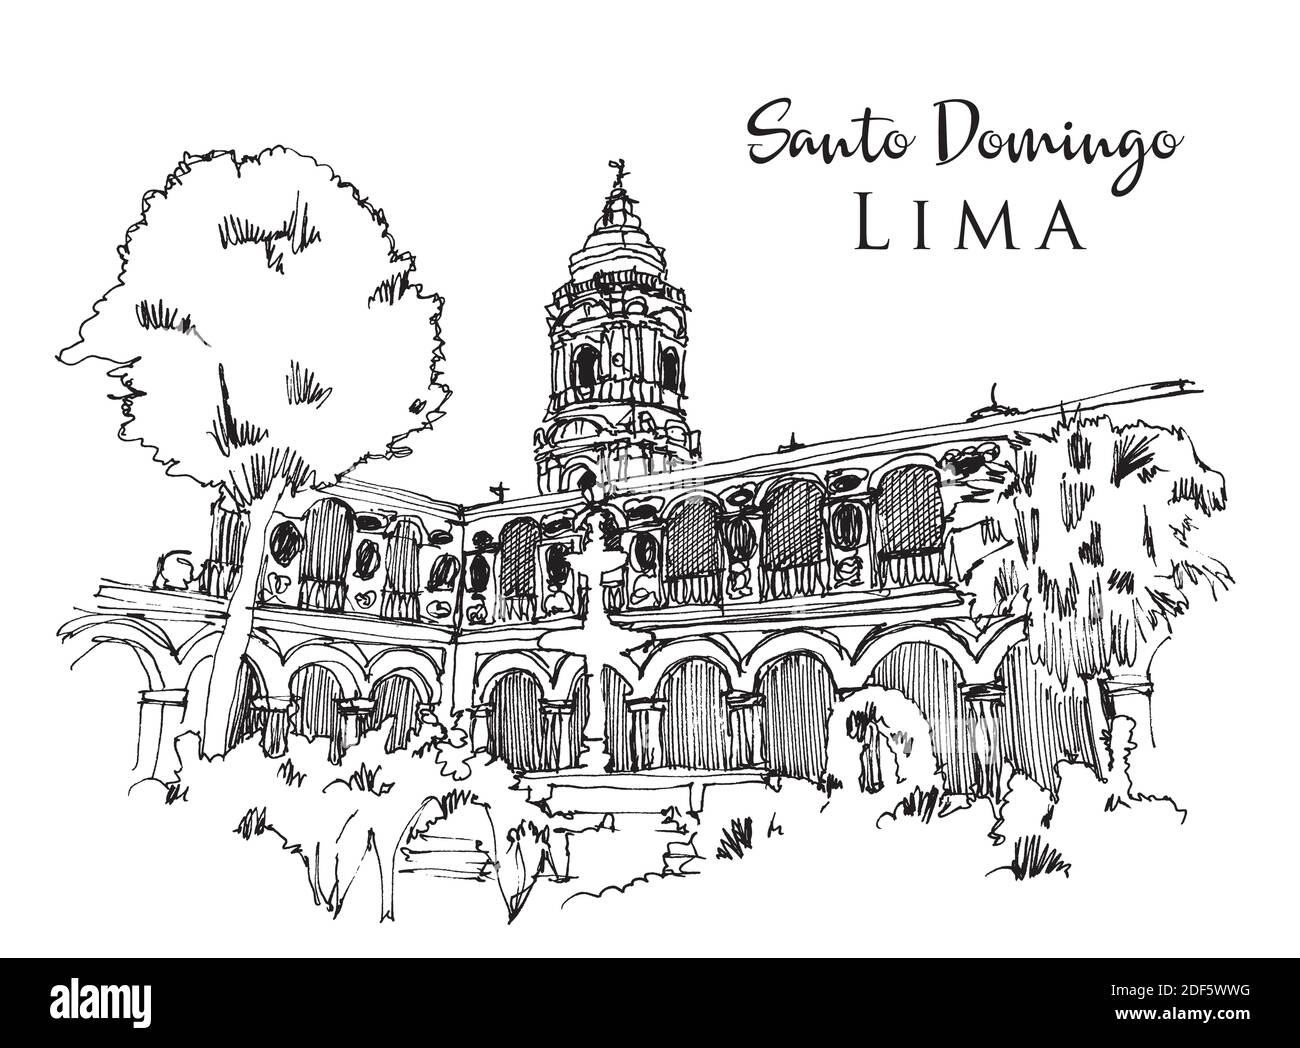 Illustration vectorielle dessinée à la main de la basilique et du couvent de Saint-Domingue à Lima, Pérou Illustration de Vecteur